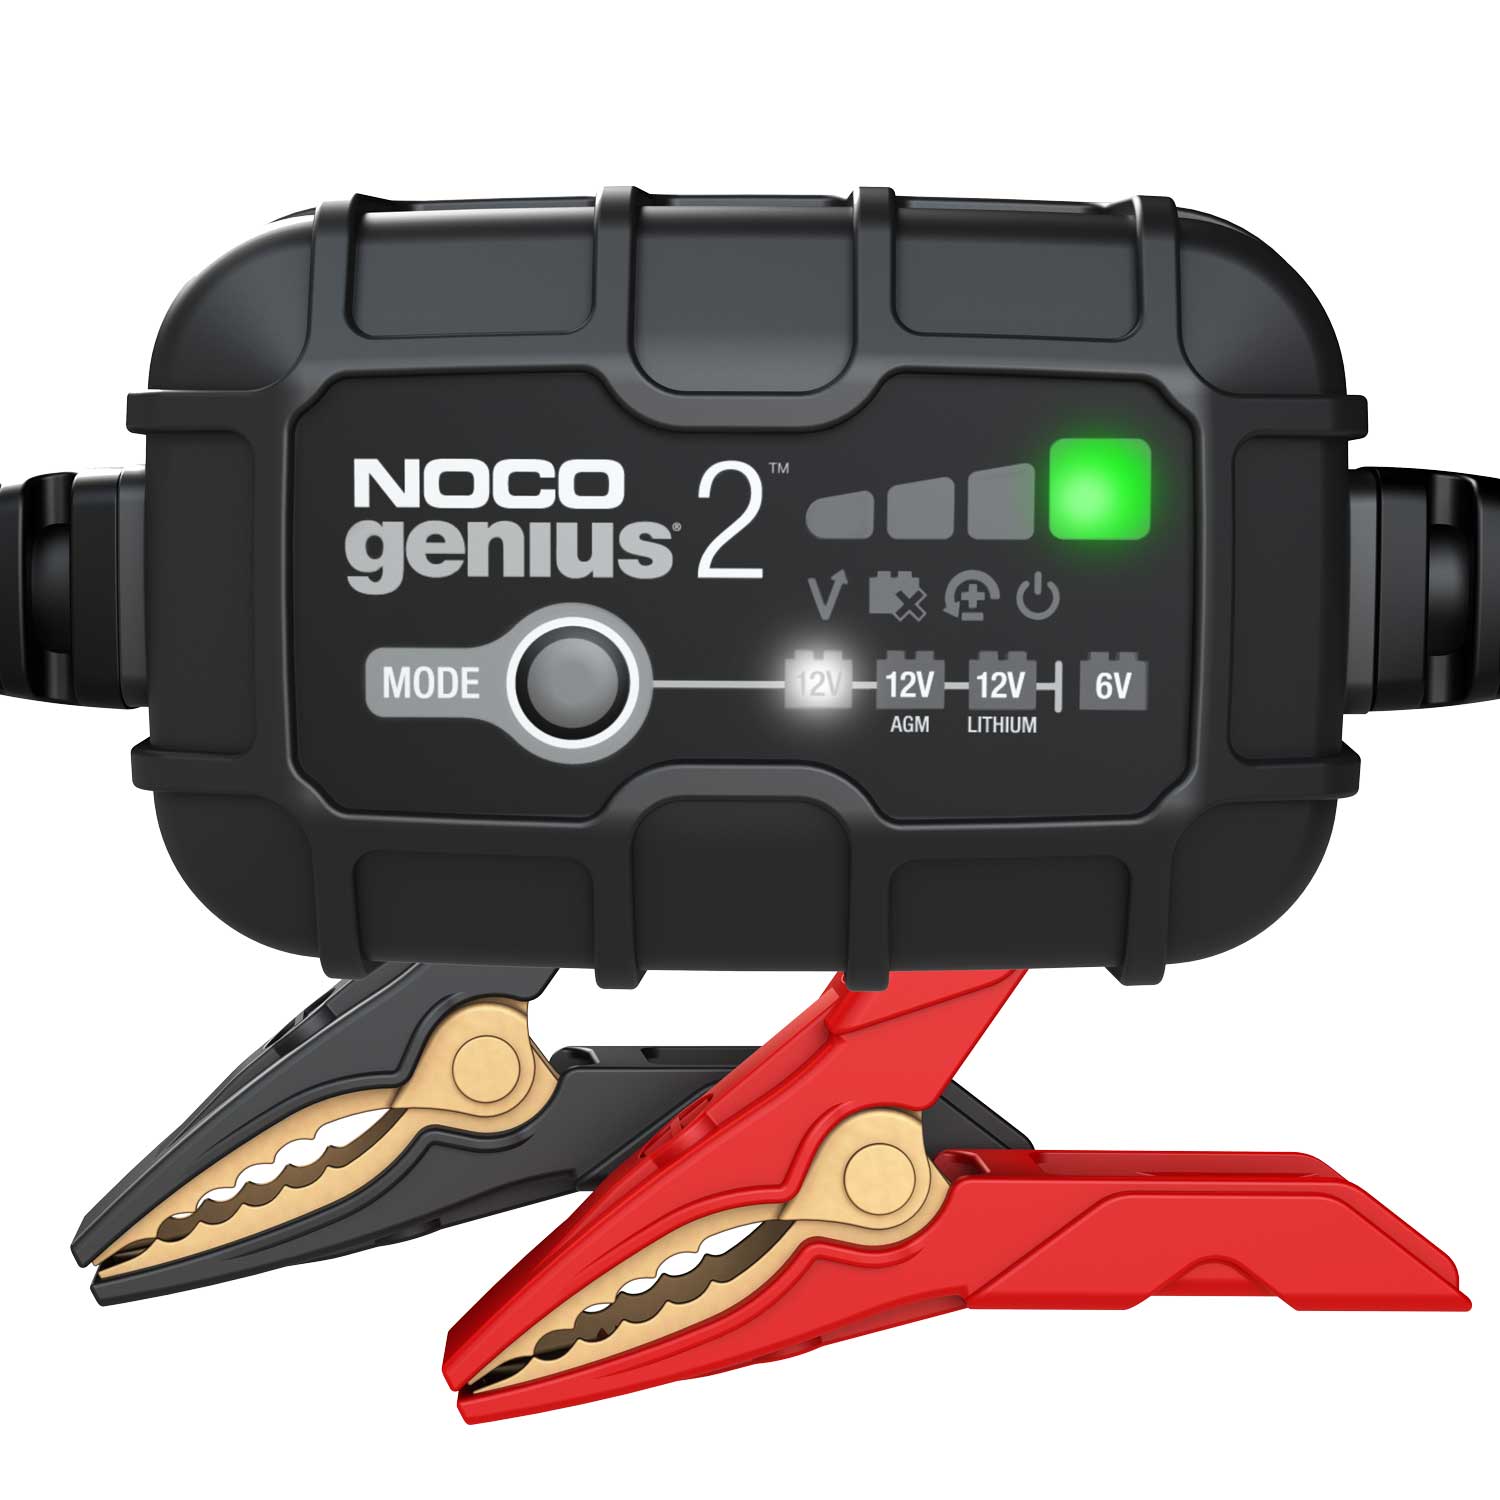 NOCO Autobatterie-Ladegerät GENIUSPRO50, 6 V / 12 V / 24V, 50 A